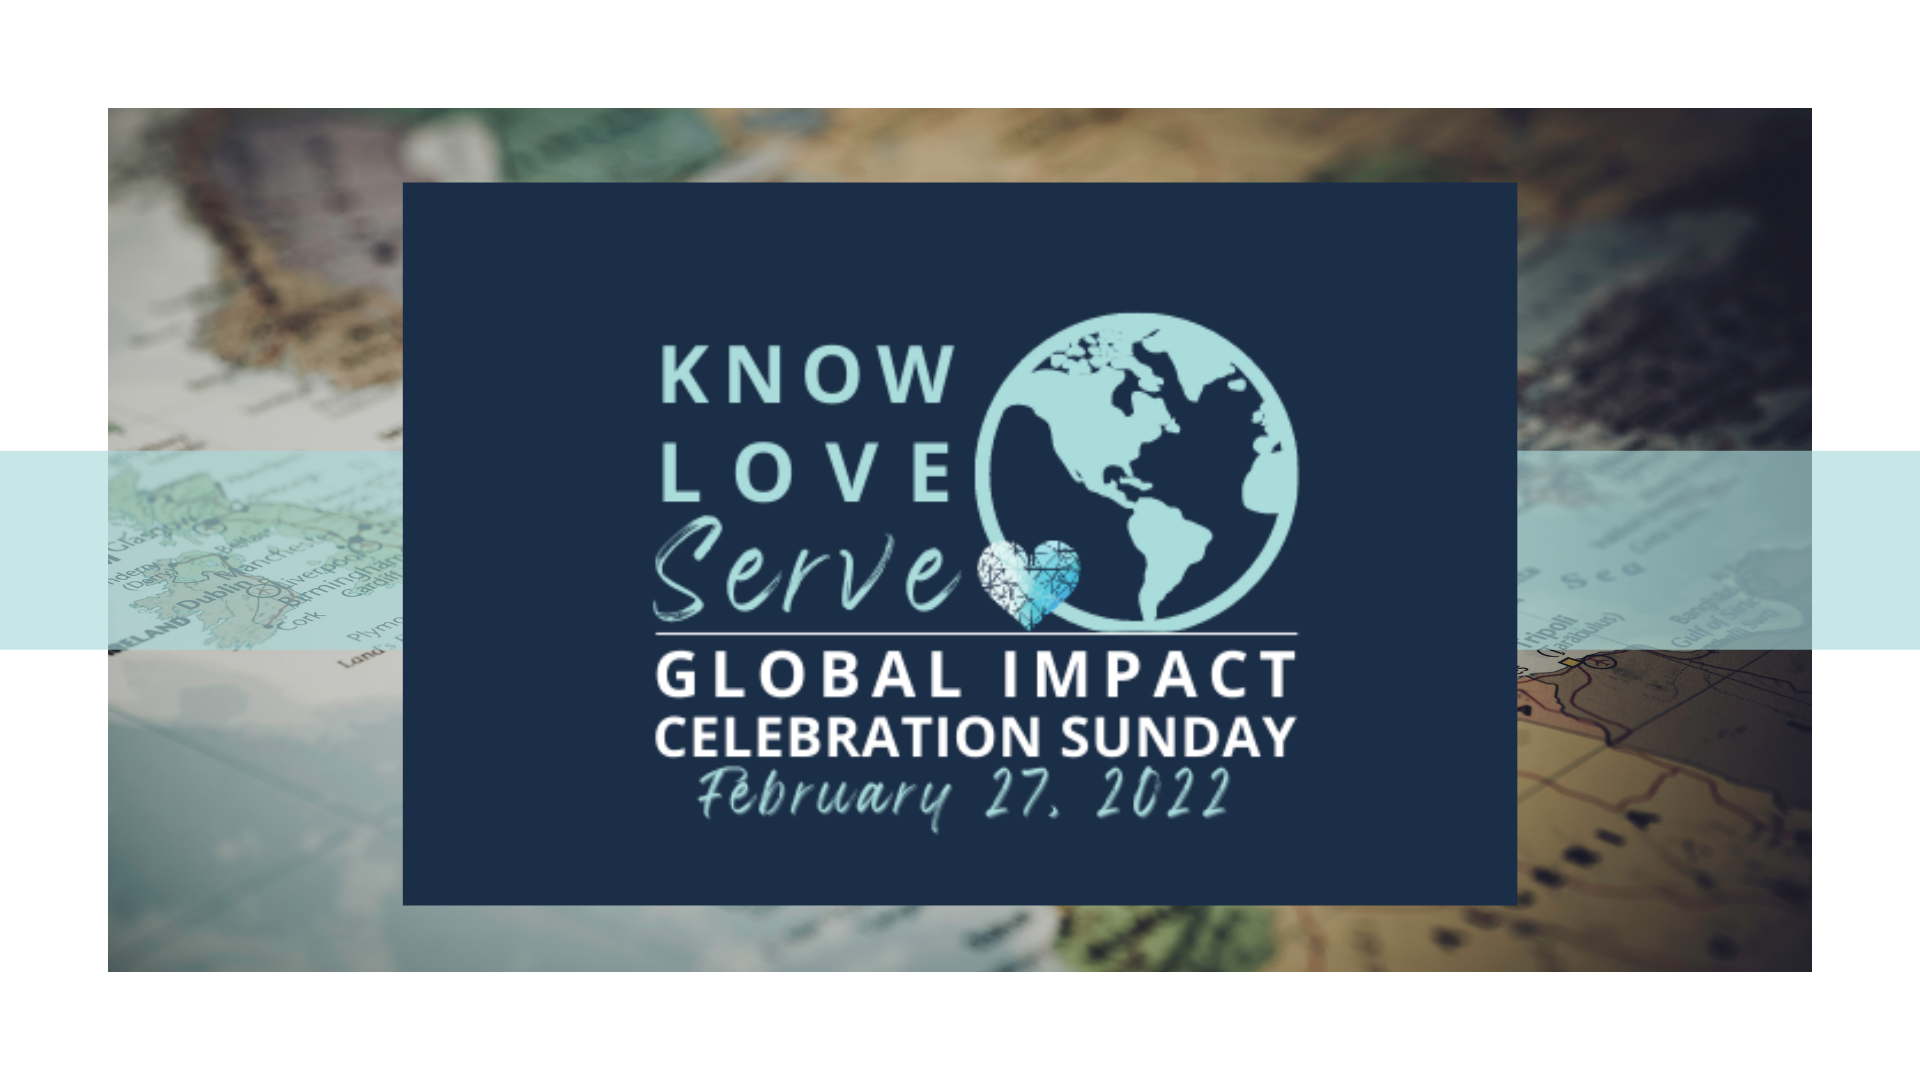 Global Impact Celebration Sunday